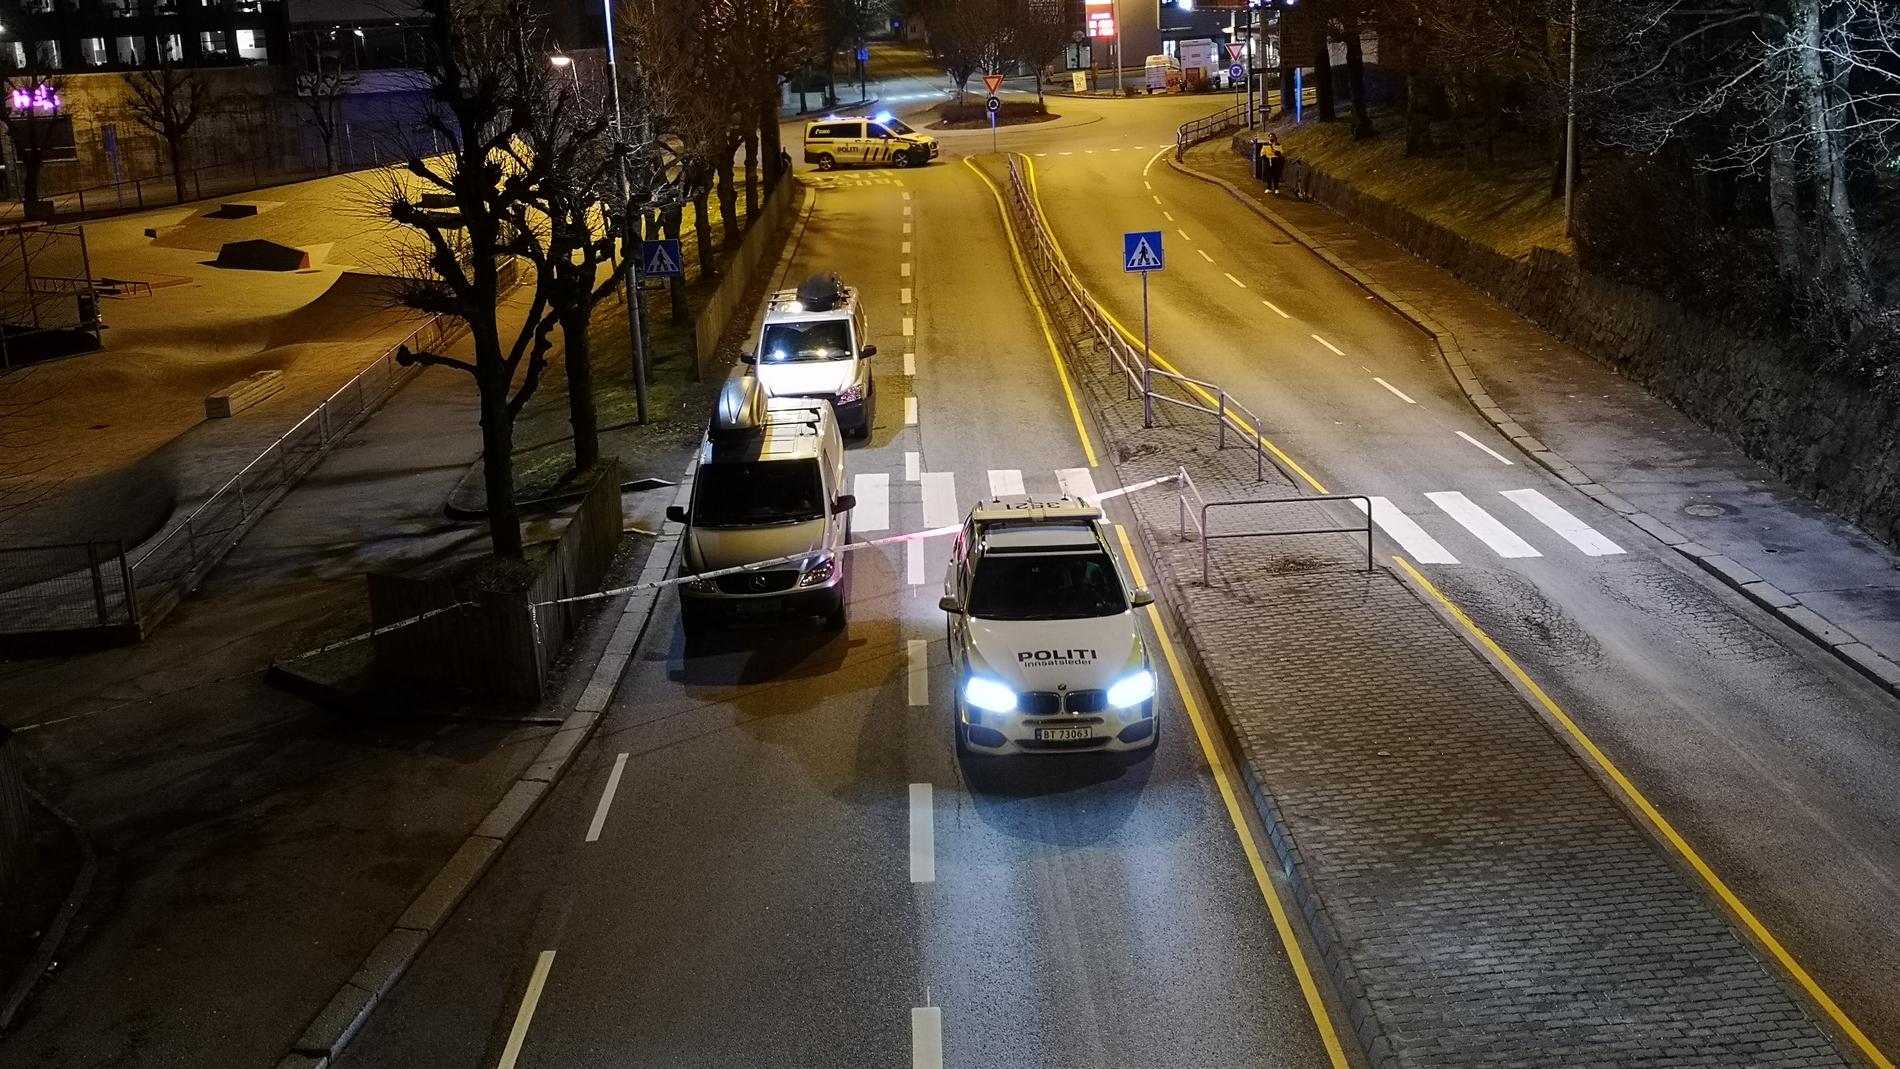 Elsparkesyklist alvorlig skadet i ulykke i Stavanger